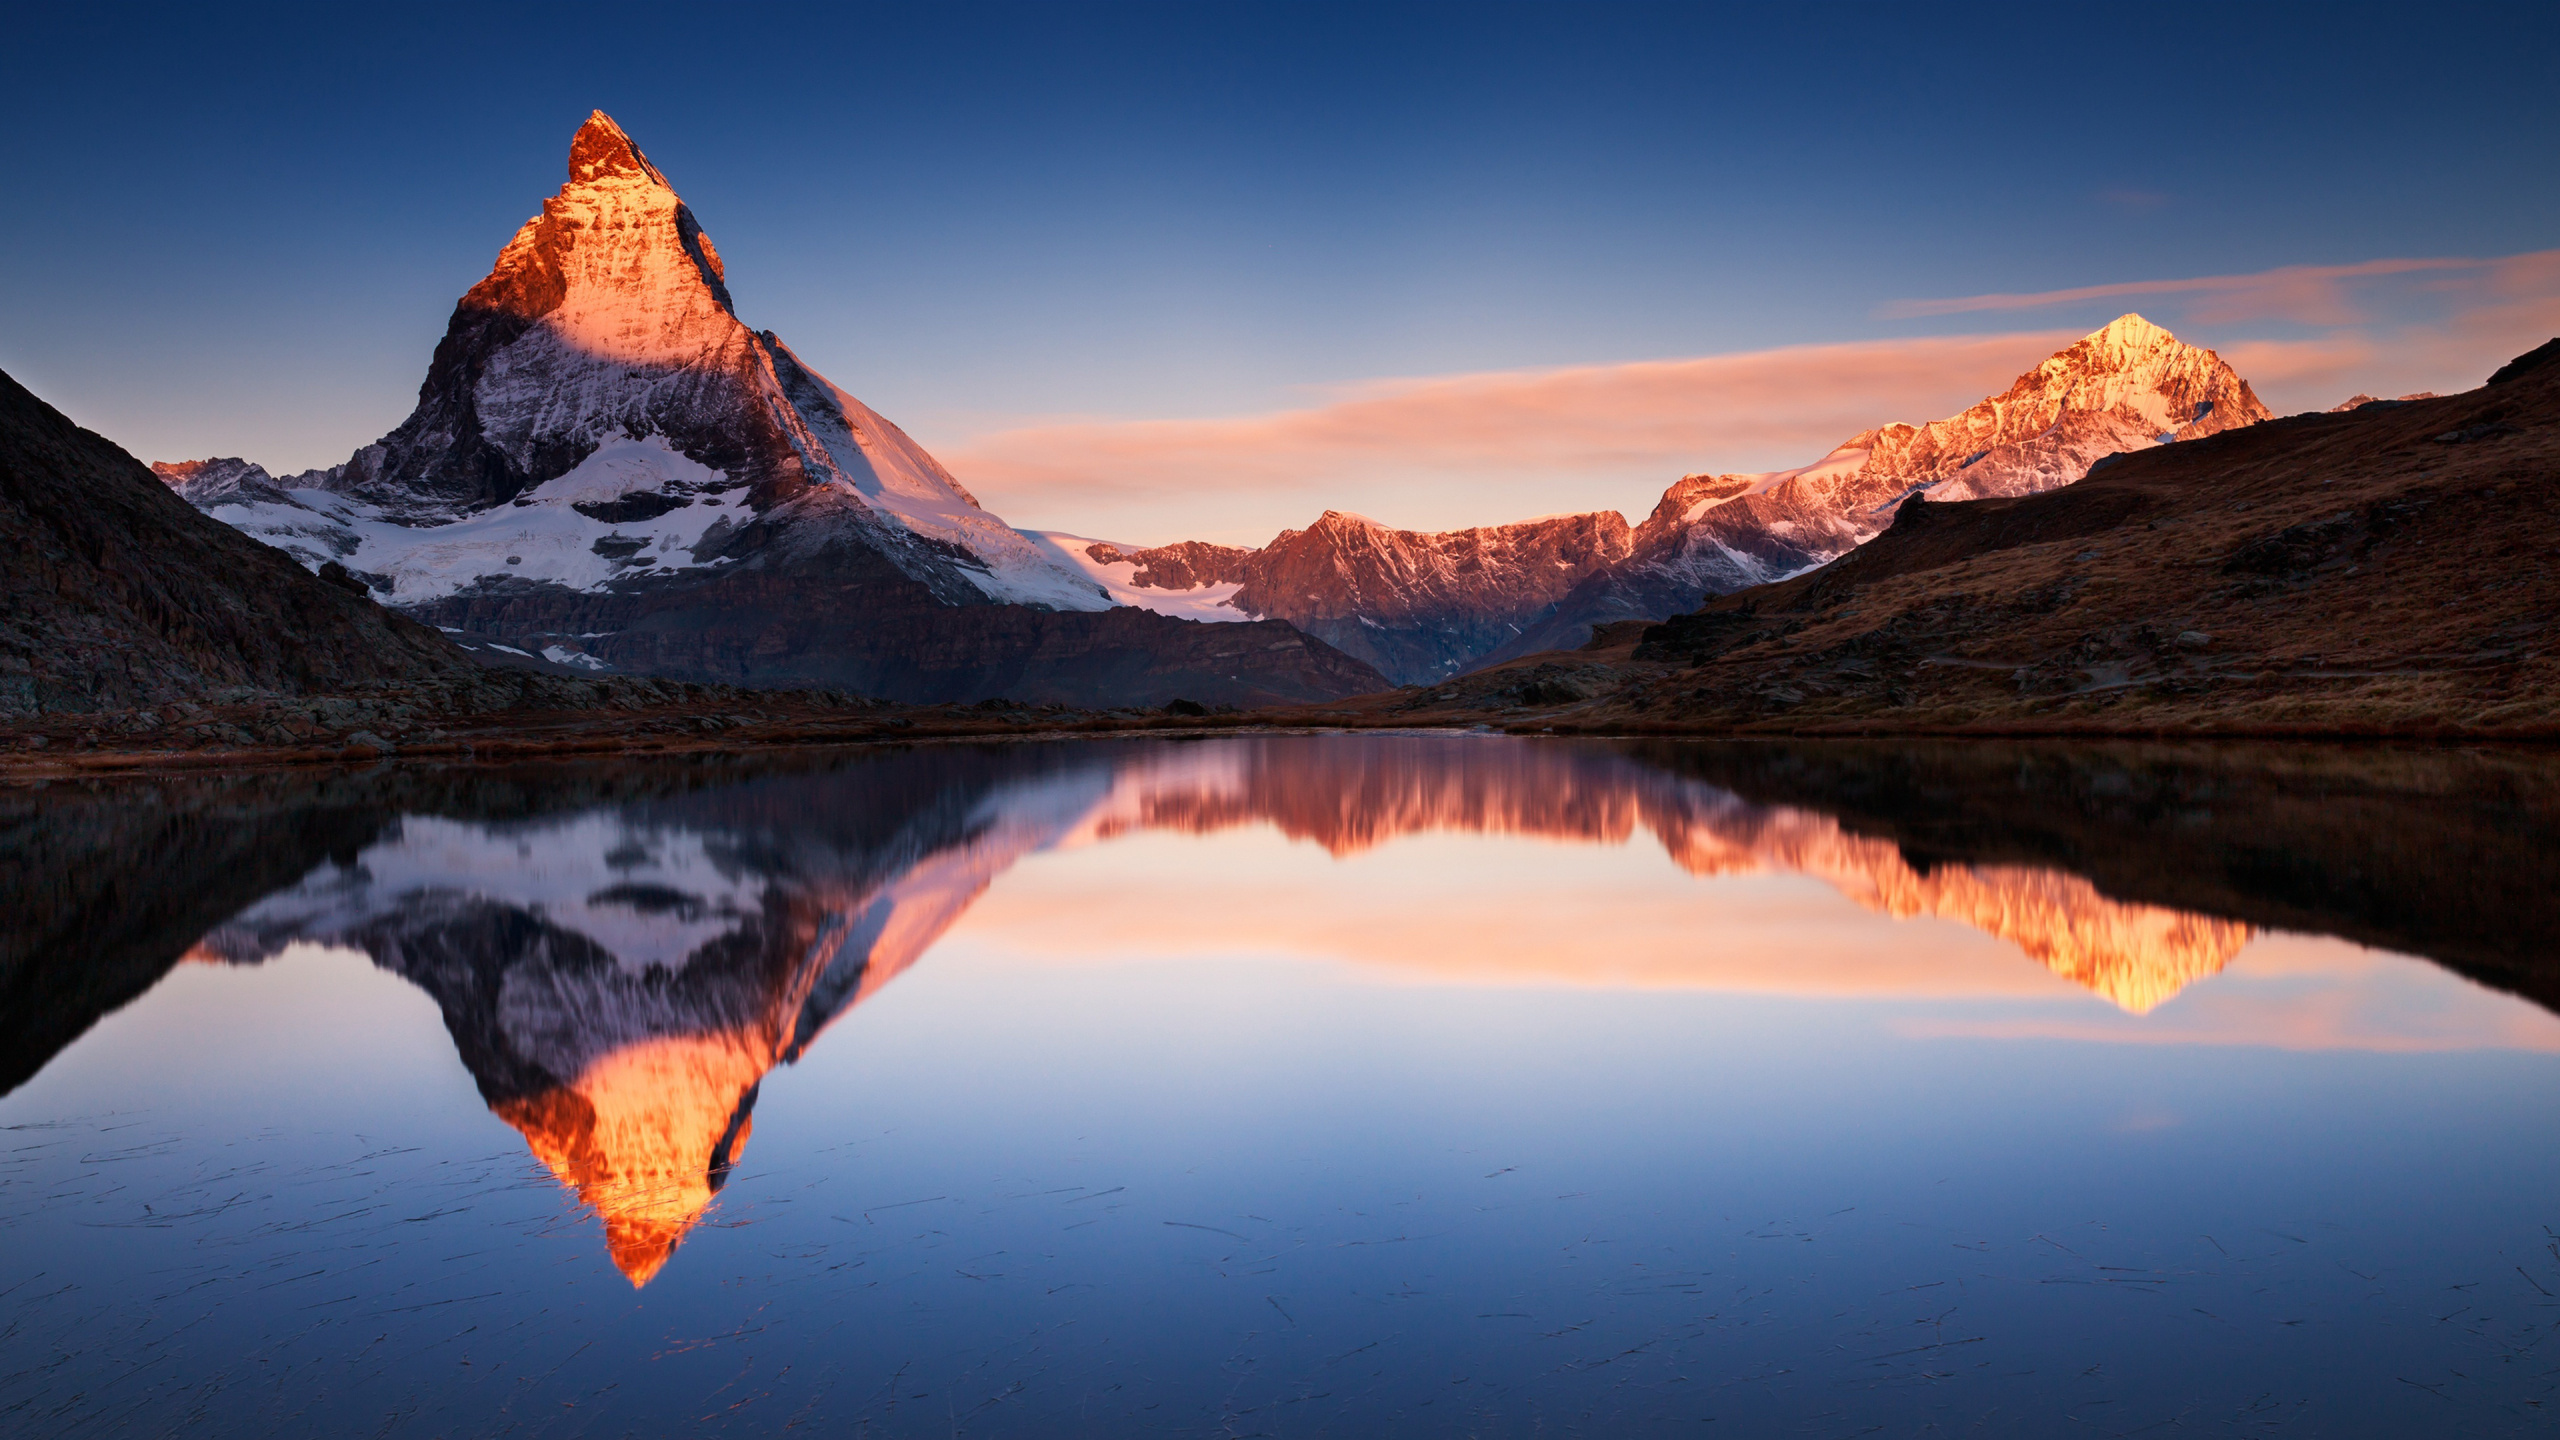 Top-rated 4K Matterhorn, Desktop background, Stunning landscape, Perfect screen, 2560x1440 HD Desktop